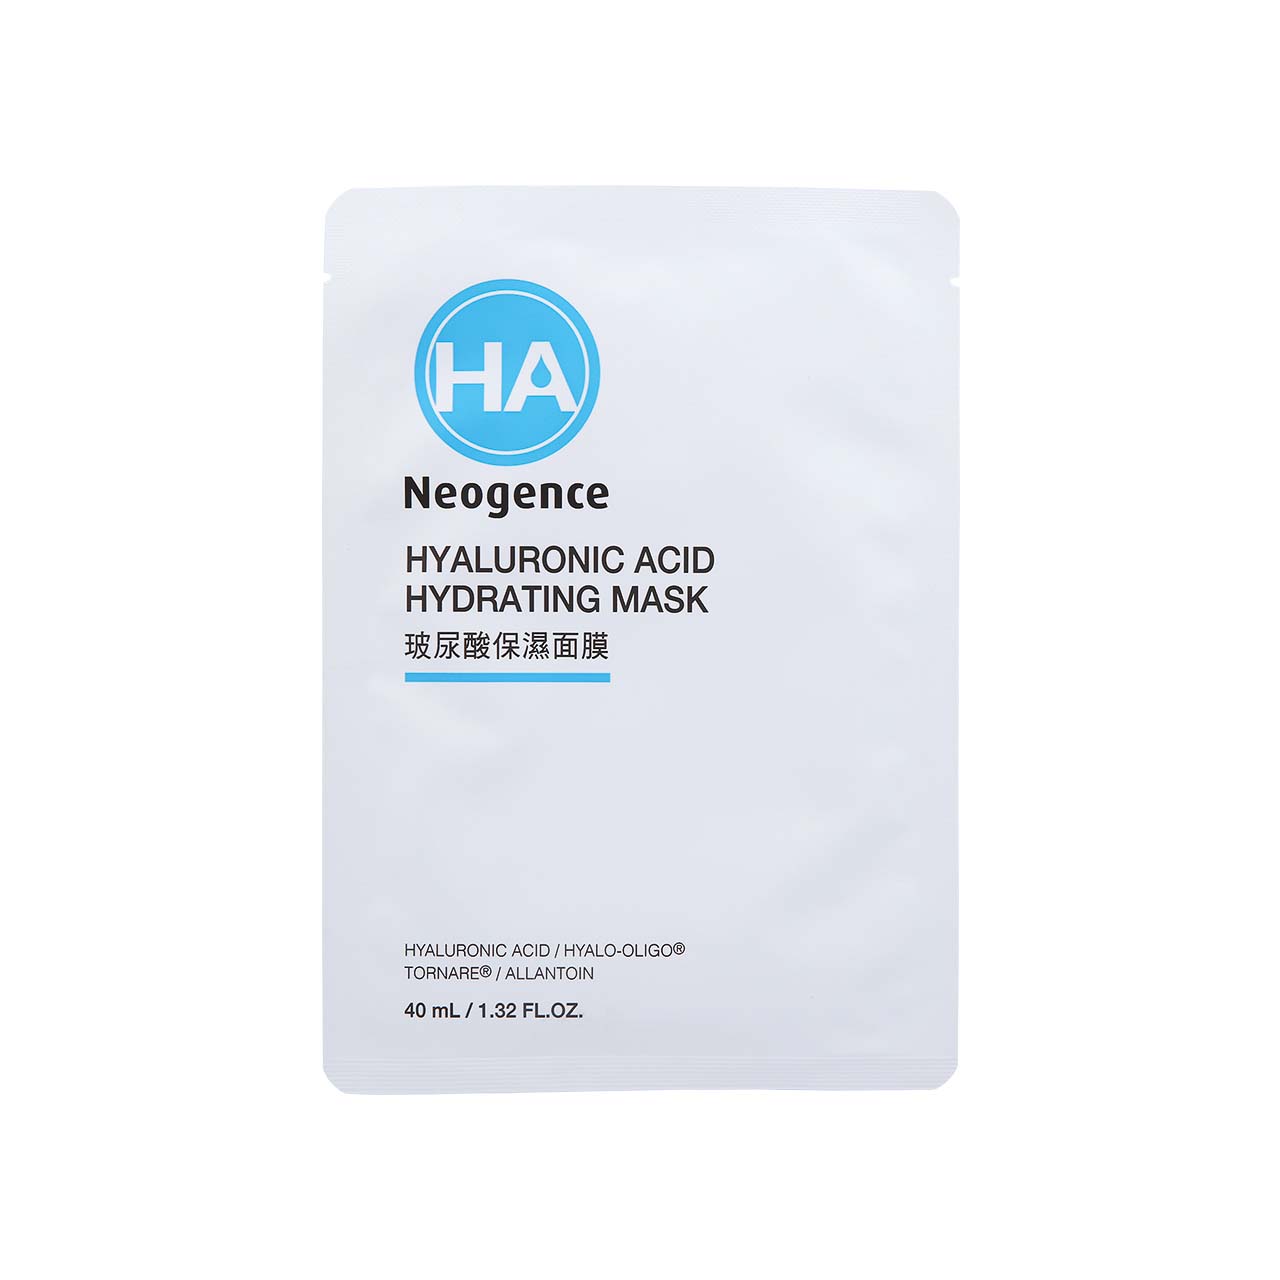 Neogence HA Hyaluronic Acid Hydrating Mask 4pcs | Sasa Global eShop